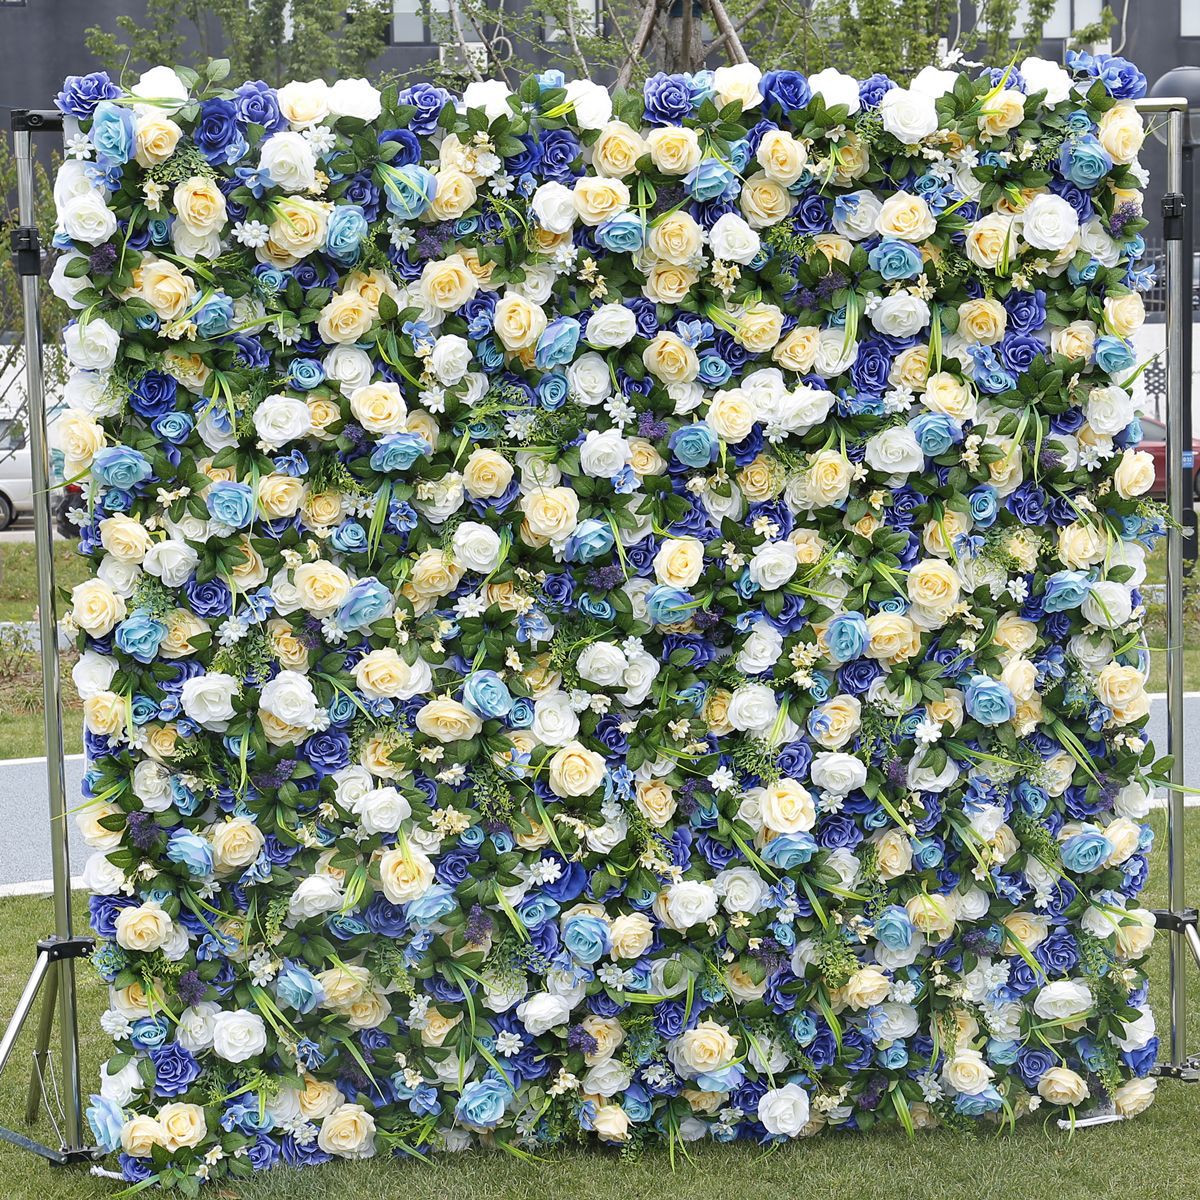 Boskstyl doek boaiem simulaasje blom muorre eftergrûn muorre griene plant muorre outdoor wedding decoration aktiviteit layout blom muorre